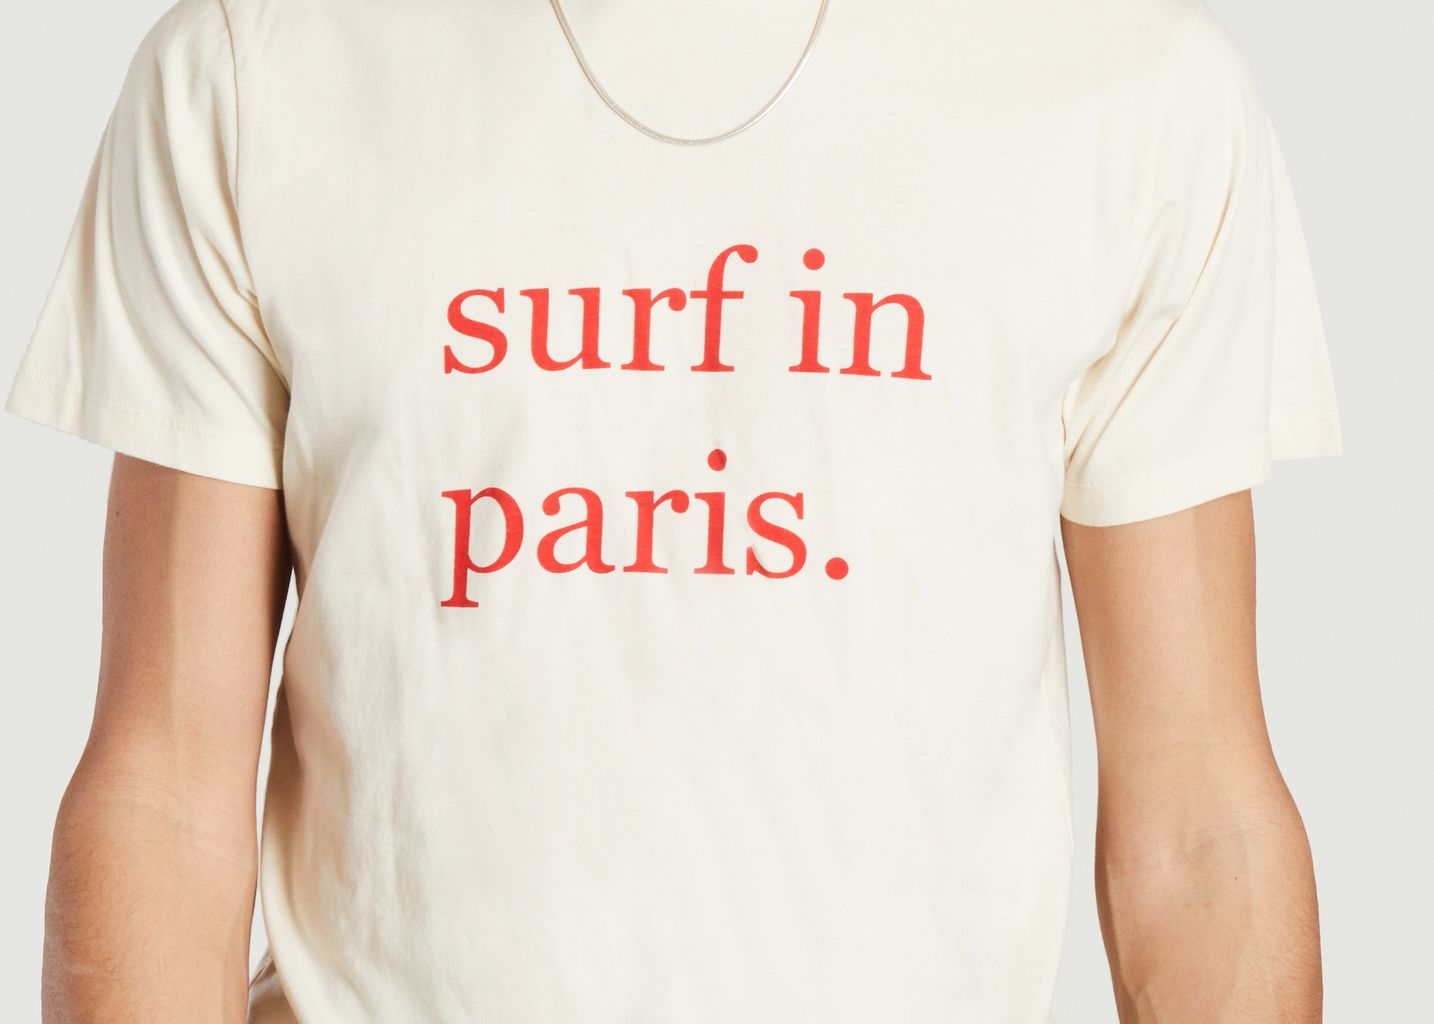 Tee-shirt Surf In Paris en coton - Cuisse de Grenouille